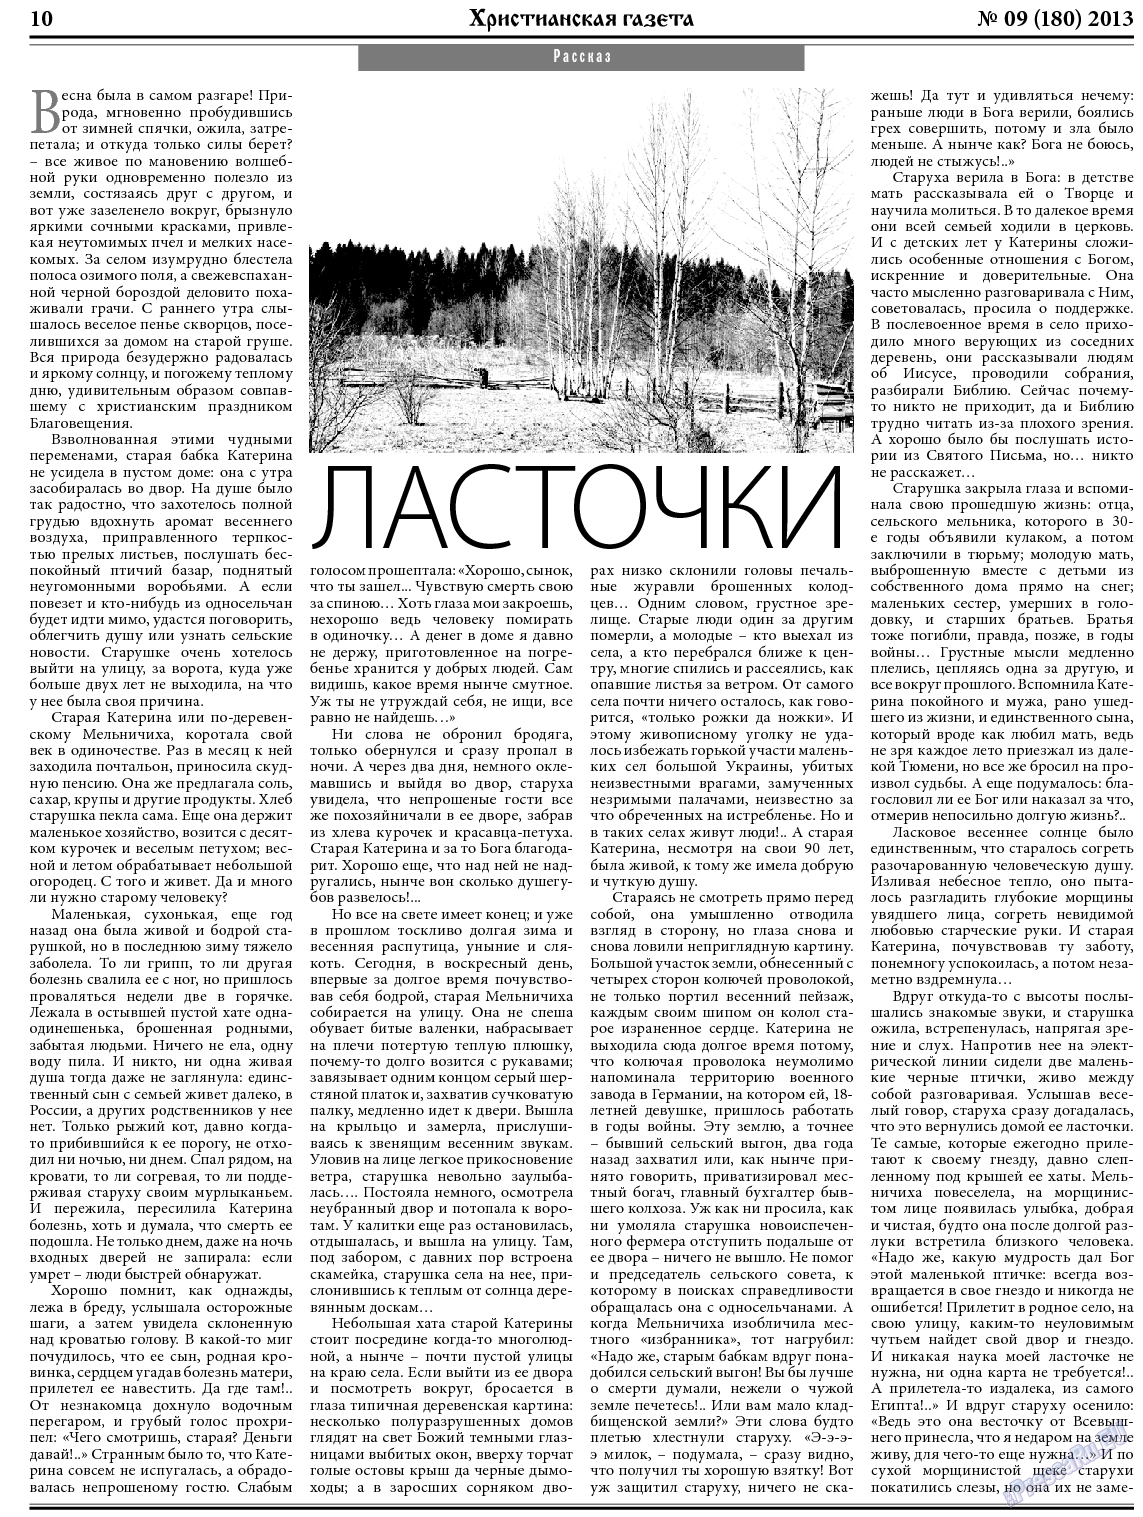 Христианская газета, газета. 2013 №9 стр.10